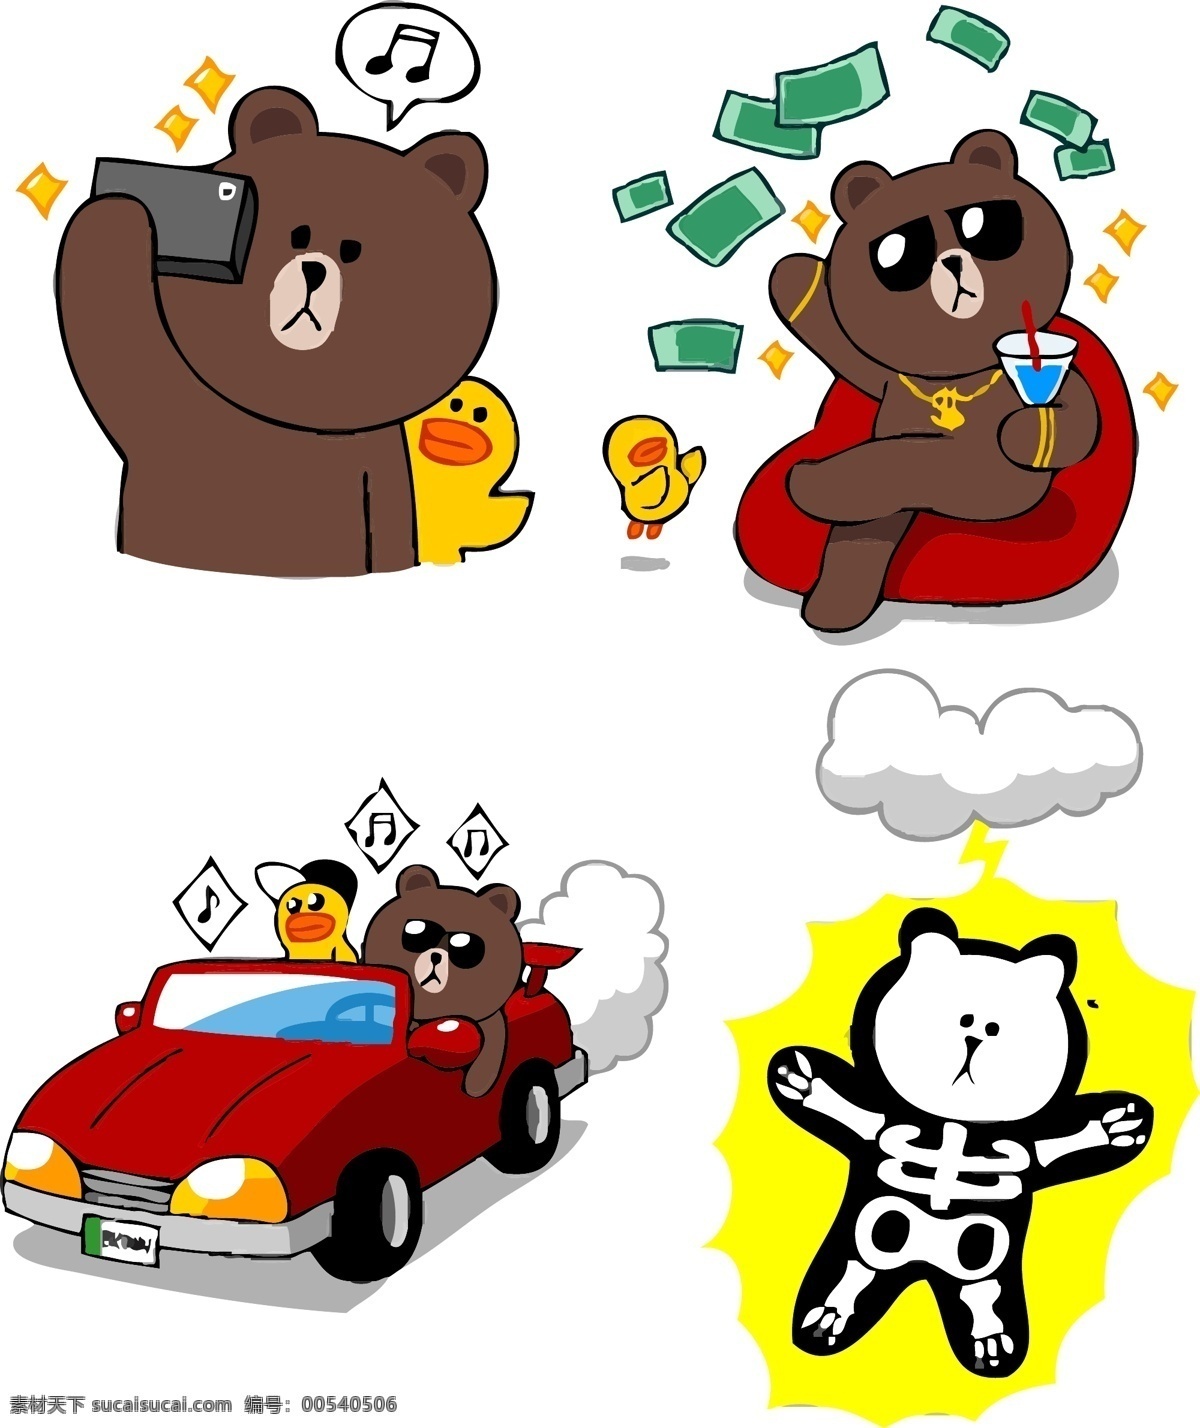 布朗熊 appline 韩国卡通 苹果 手机 应用 app 熊 鸡 卡通 拍照 车 闪电 电击 卡通设计 矢量